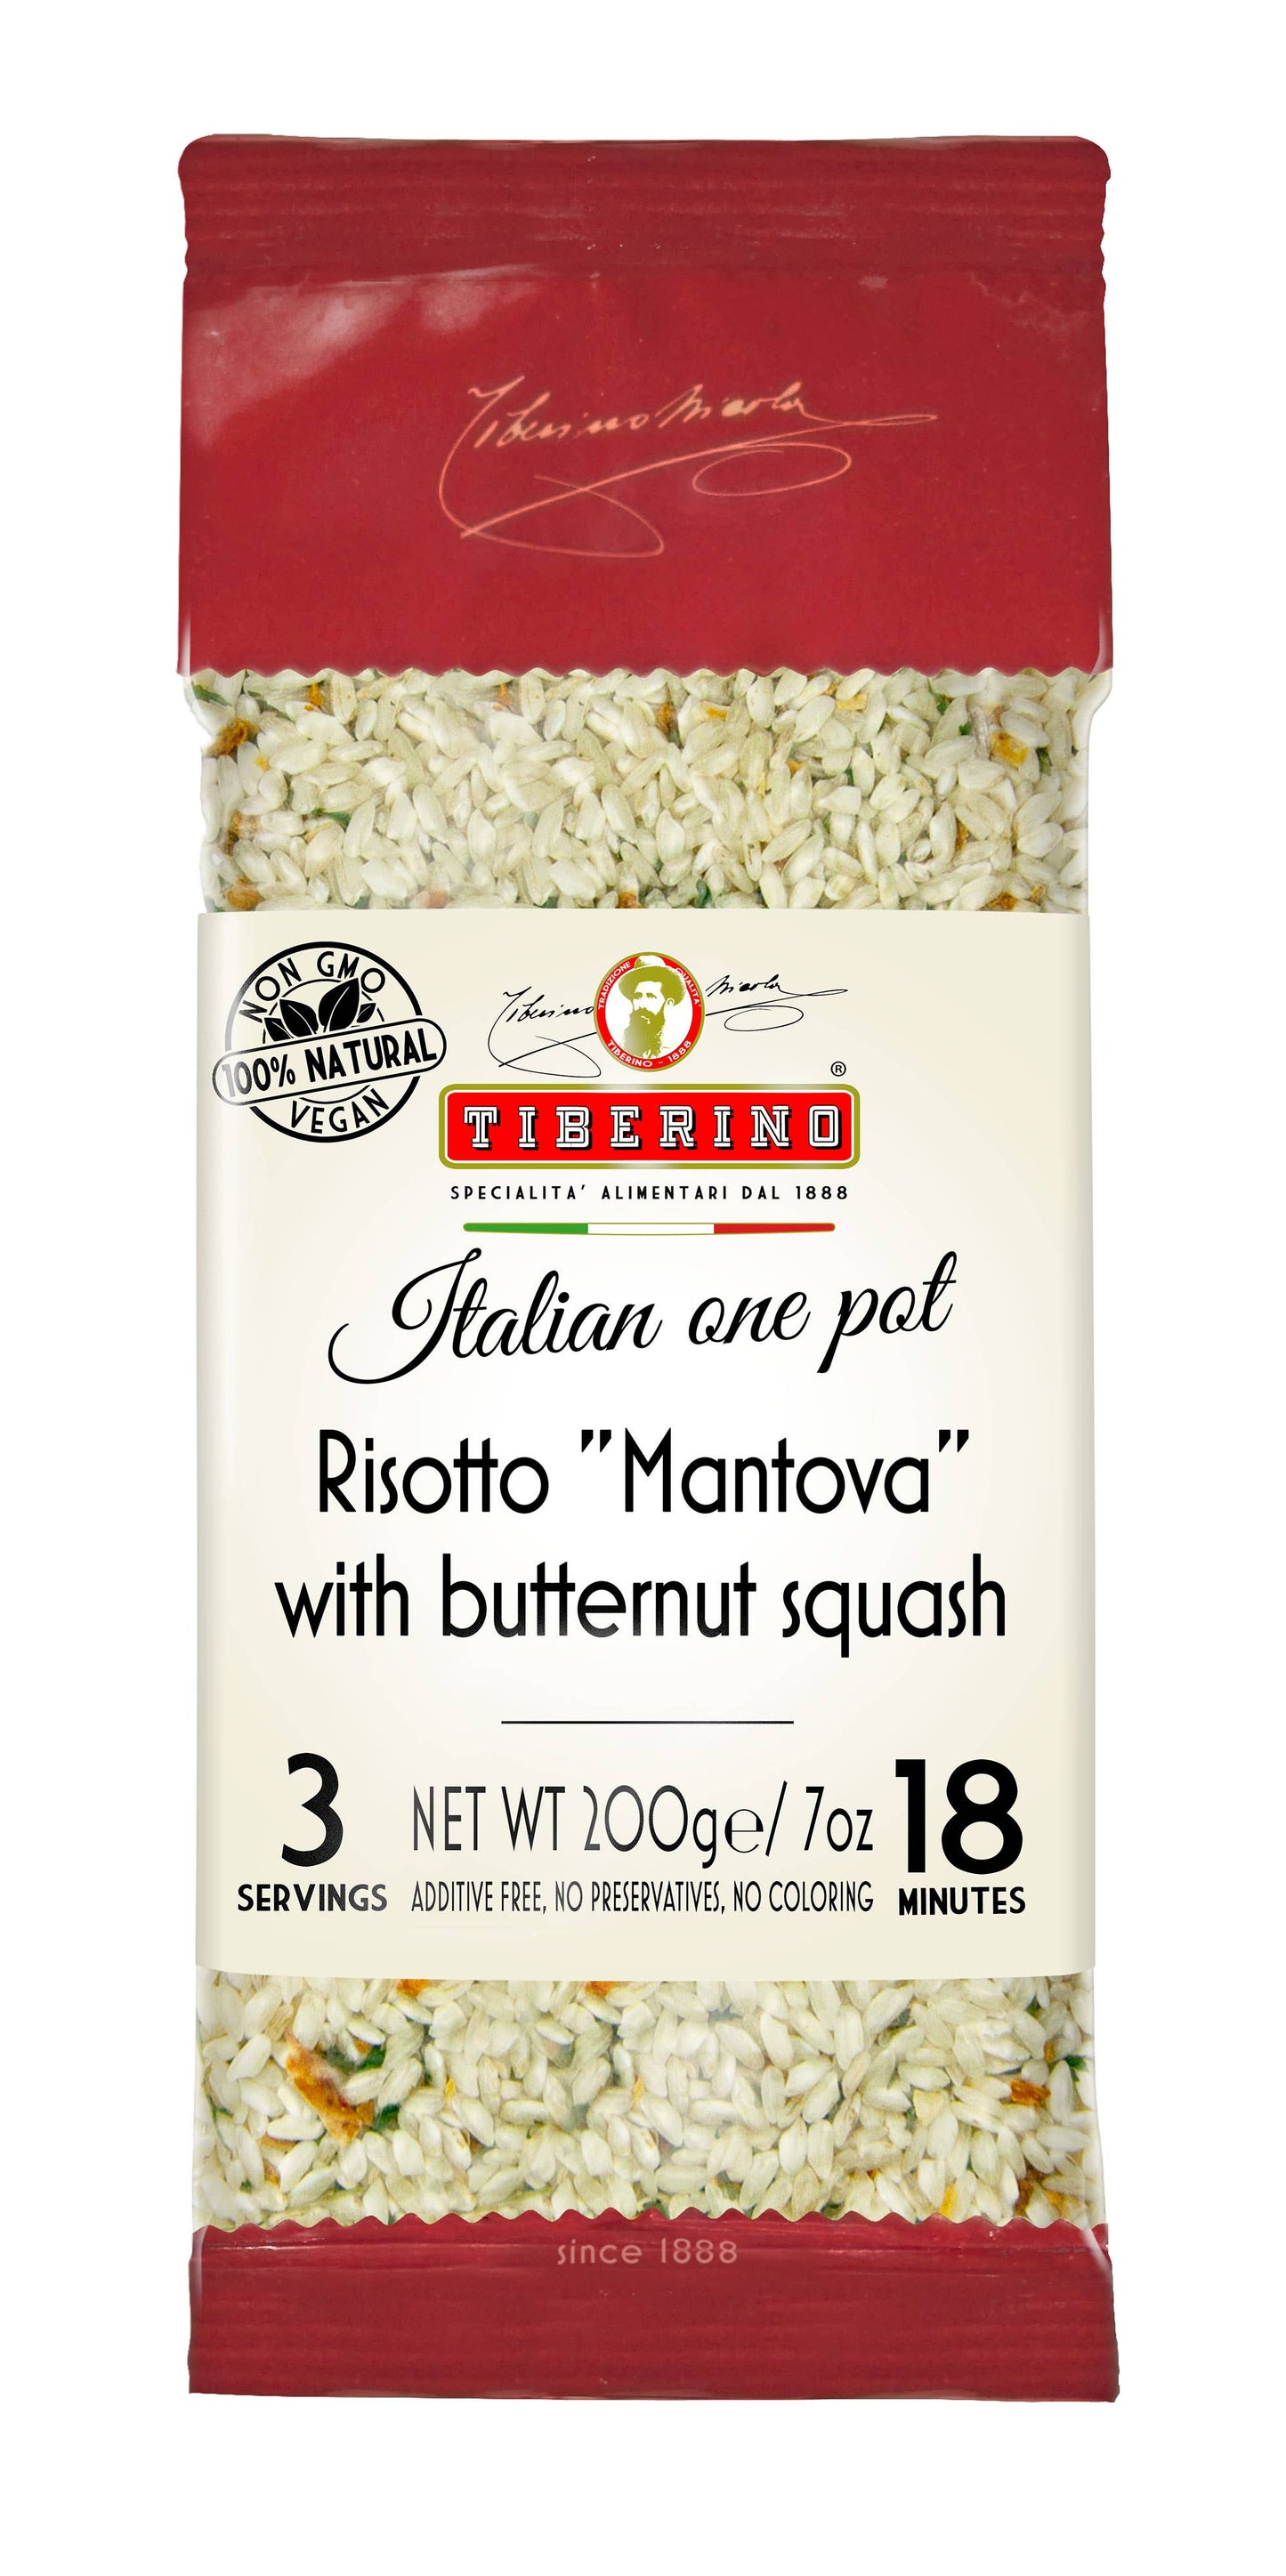 Risotto "Mantova" with Butternut Squash